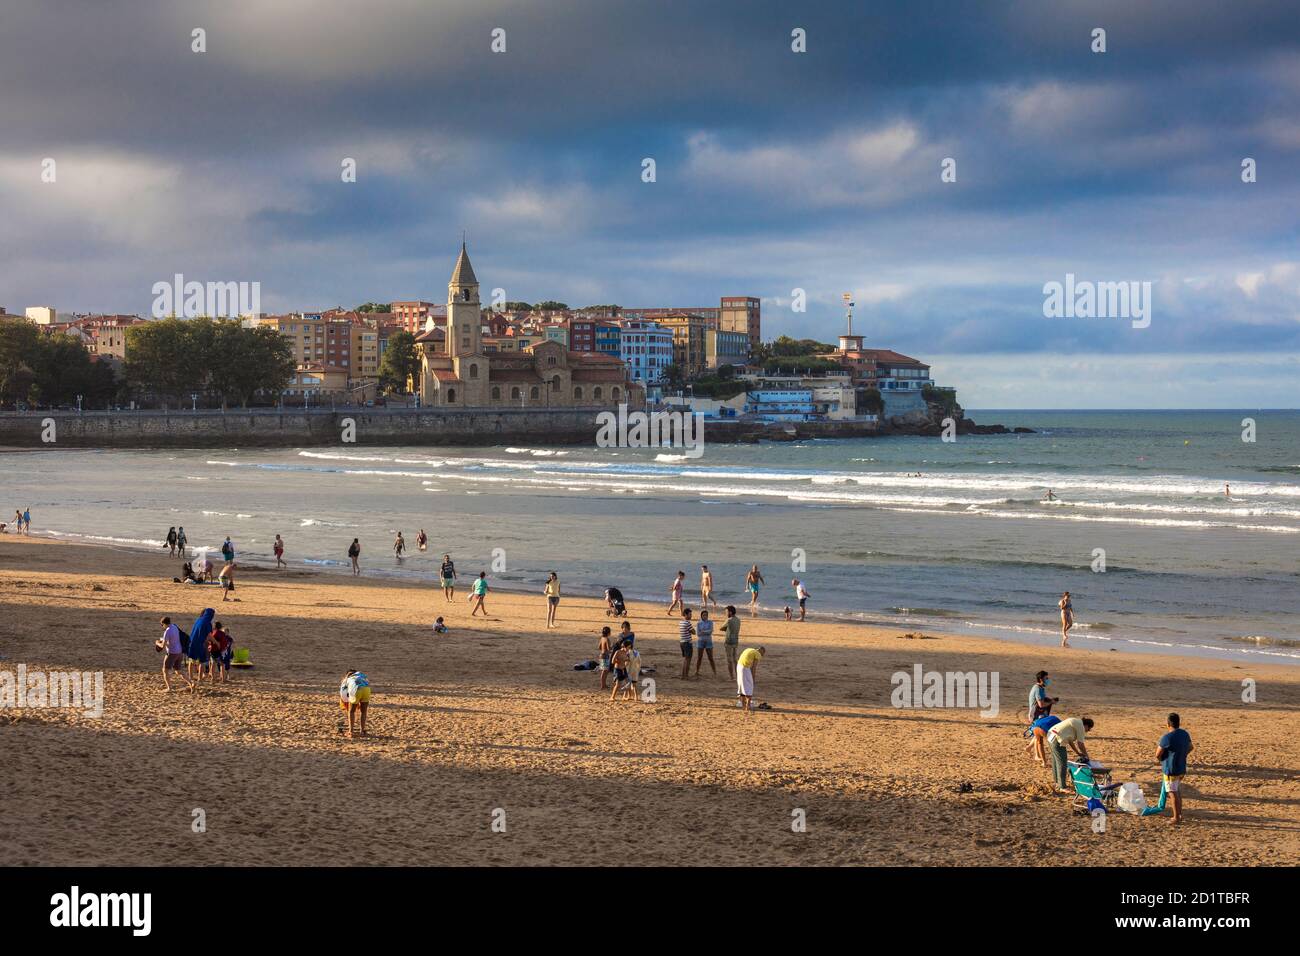 Bains de soleil sur la plage de San Lorenzo. Mer de Cantabrie. Gijón. Asturies. Espagne Banque D'Images